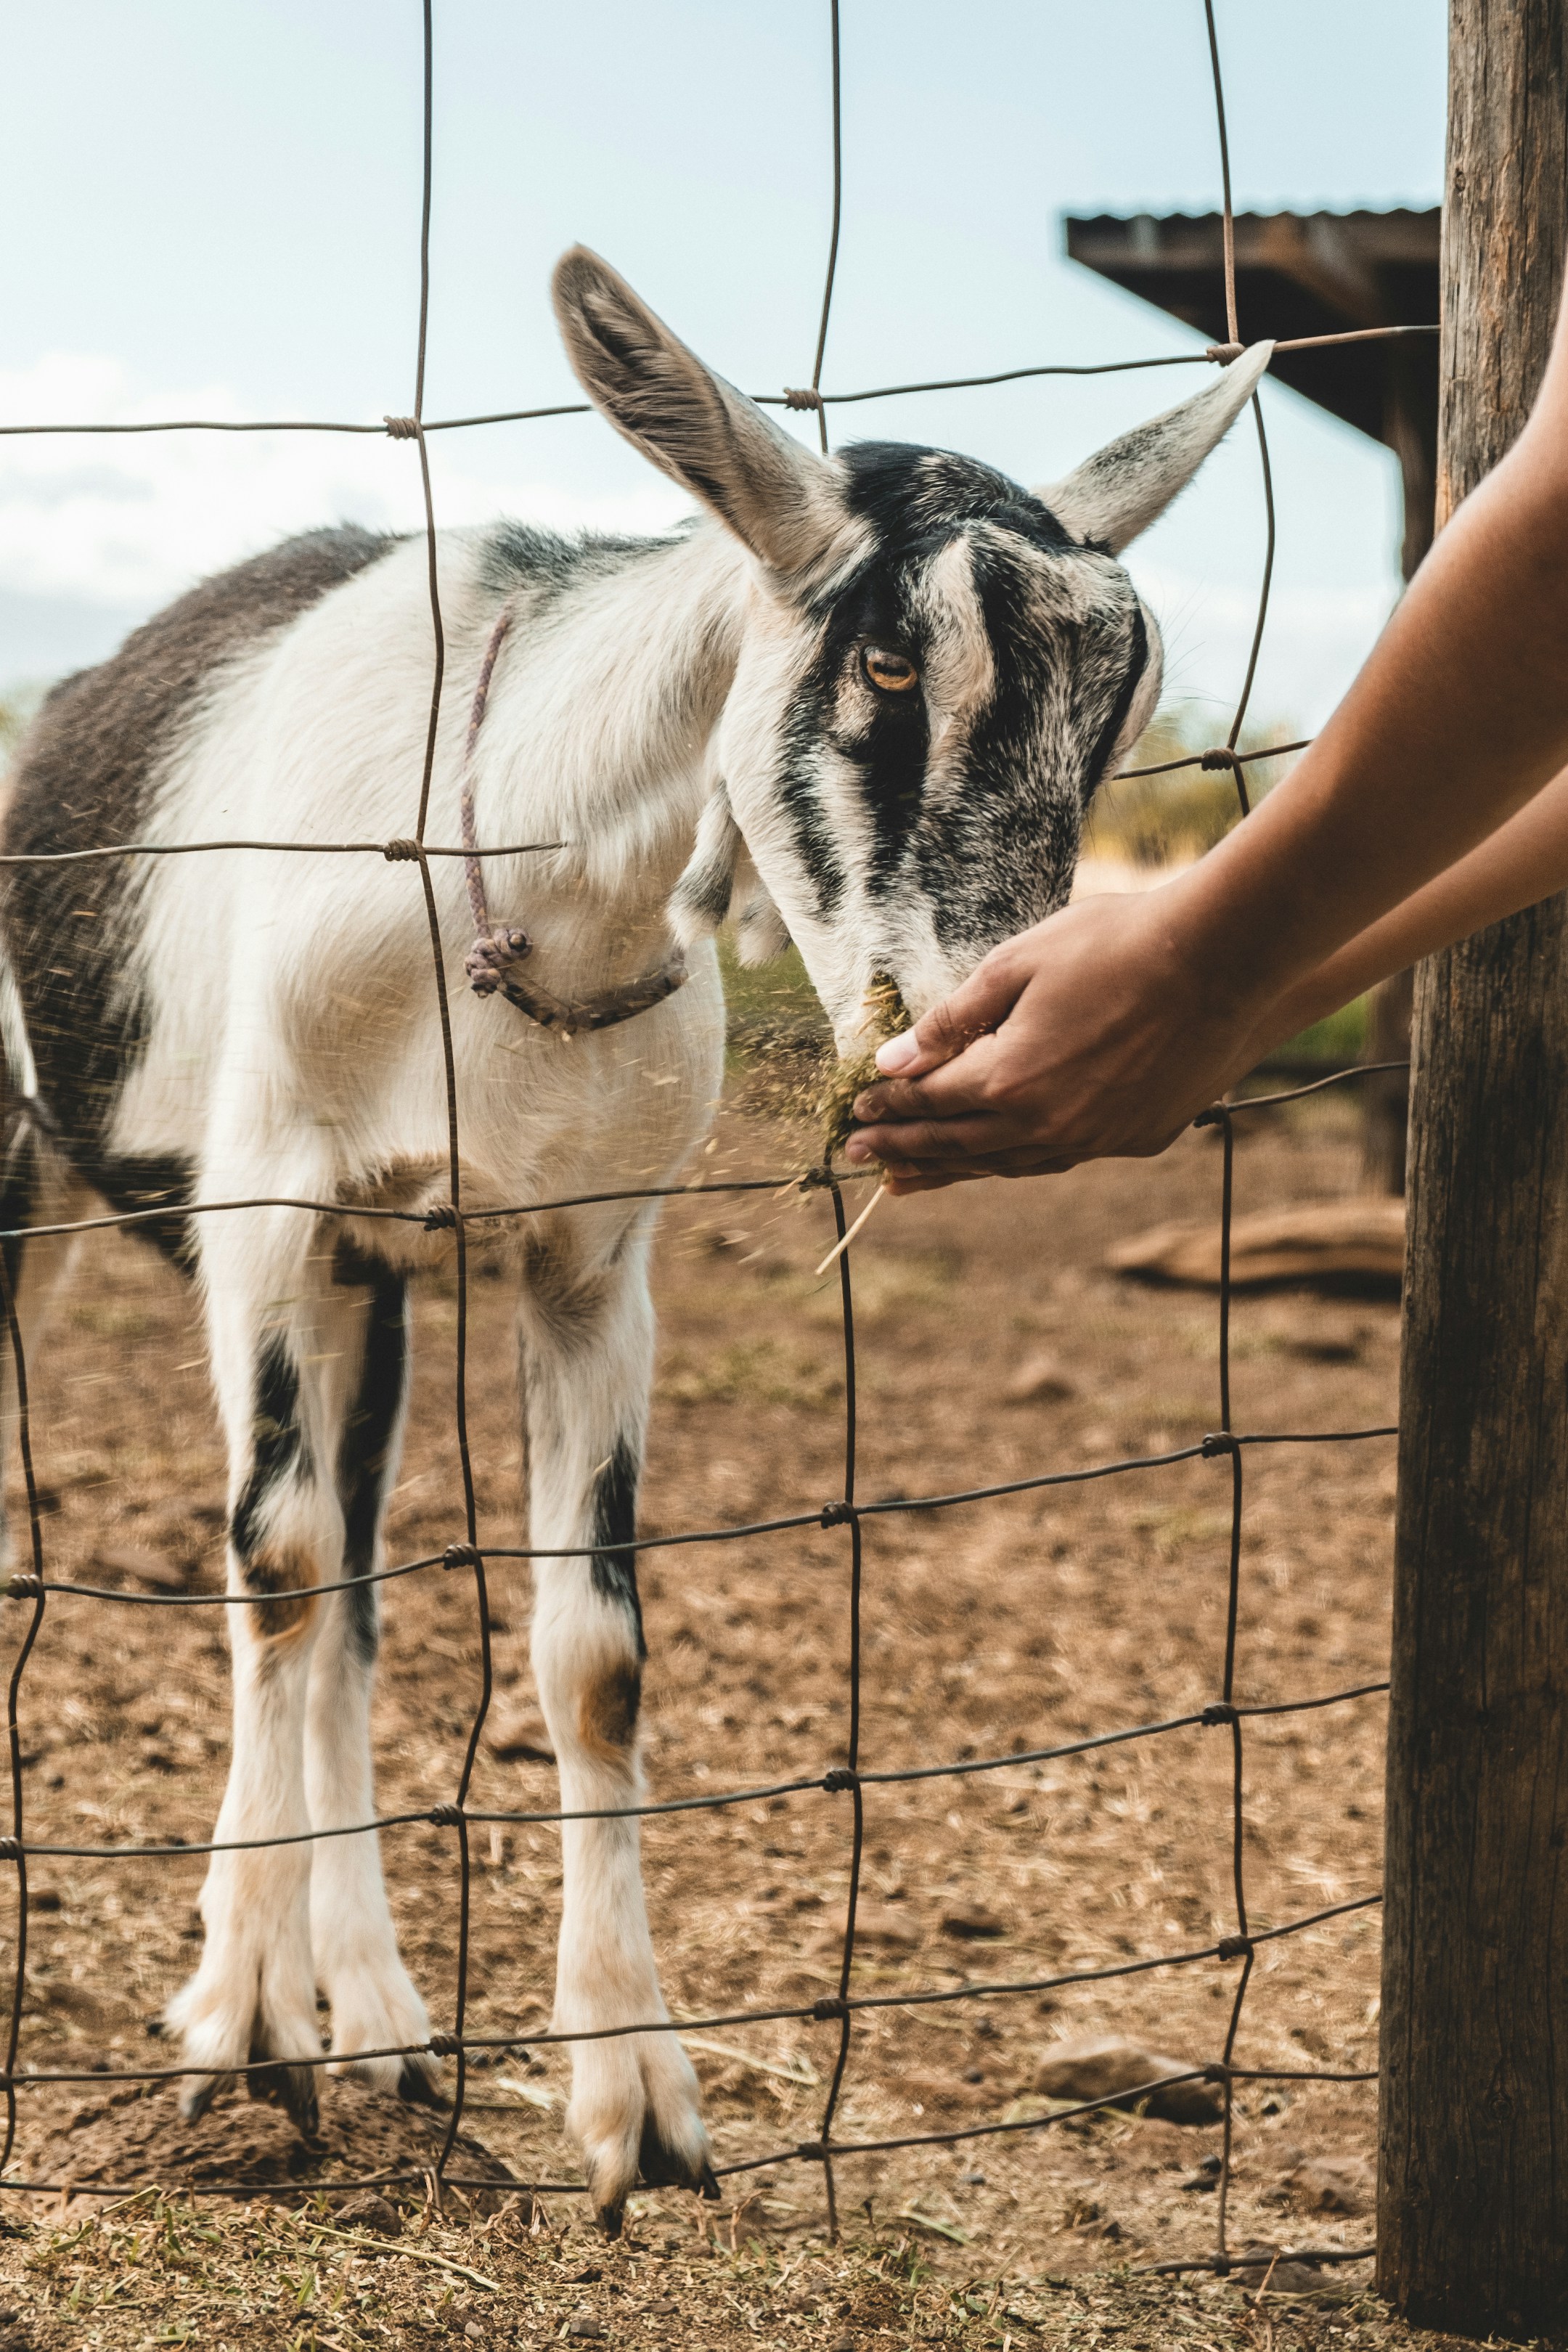 Goat Farming Loan: बकरी पालन के लिए लोन कहां से लें?